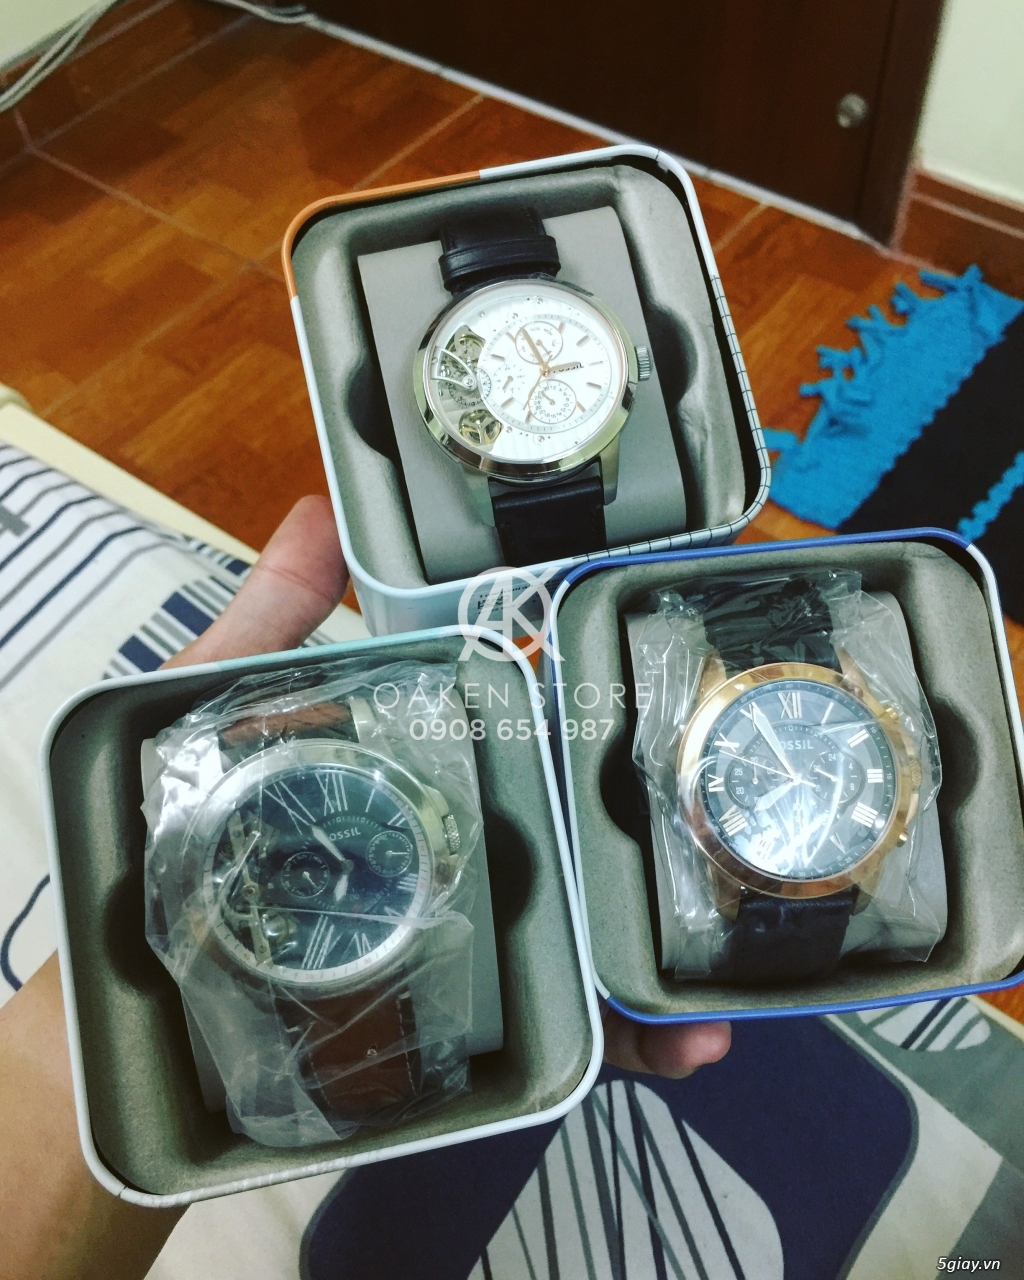 Oaken Store - Đồng hồ chính hãng xách tay giá tốt - 4